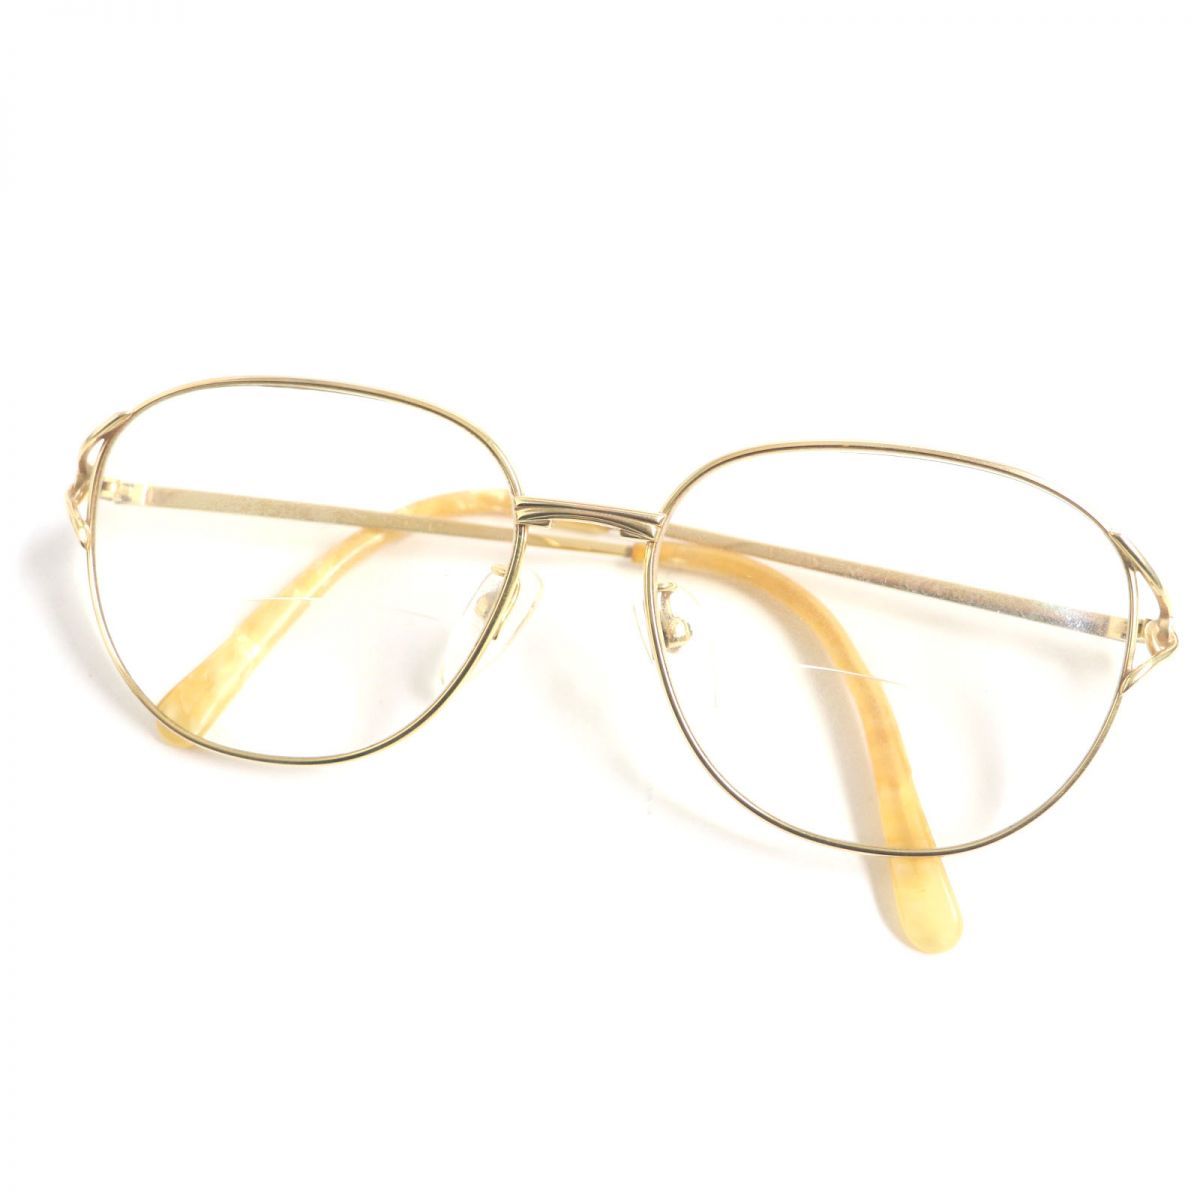 良品▽PENTAX ペンタックス Au750/1000 K18 老眼鏡/メガネ/アイウェア 